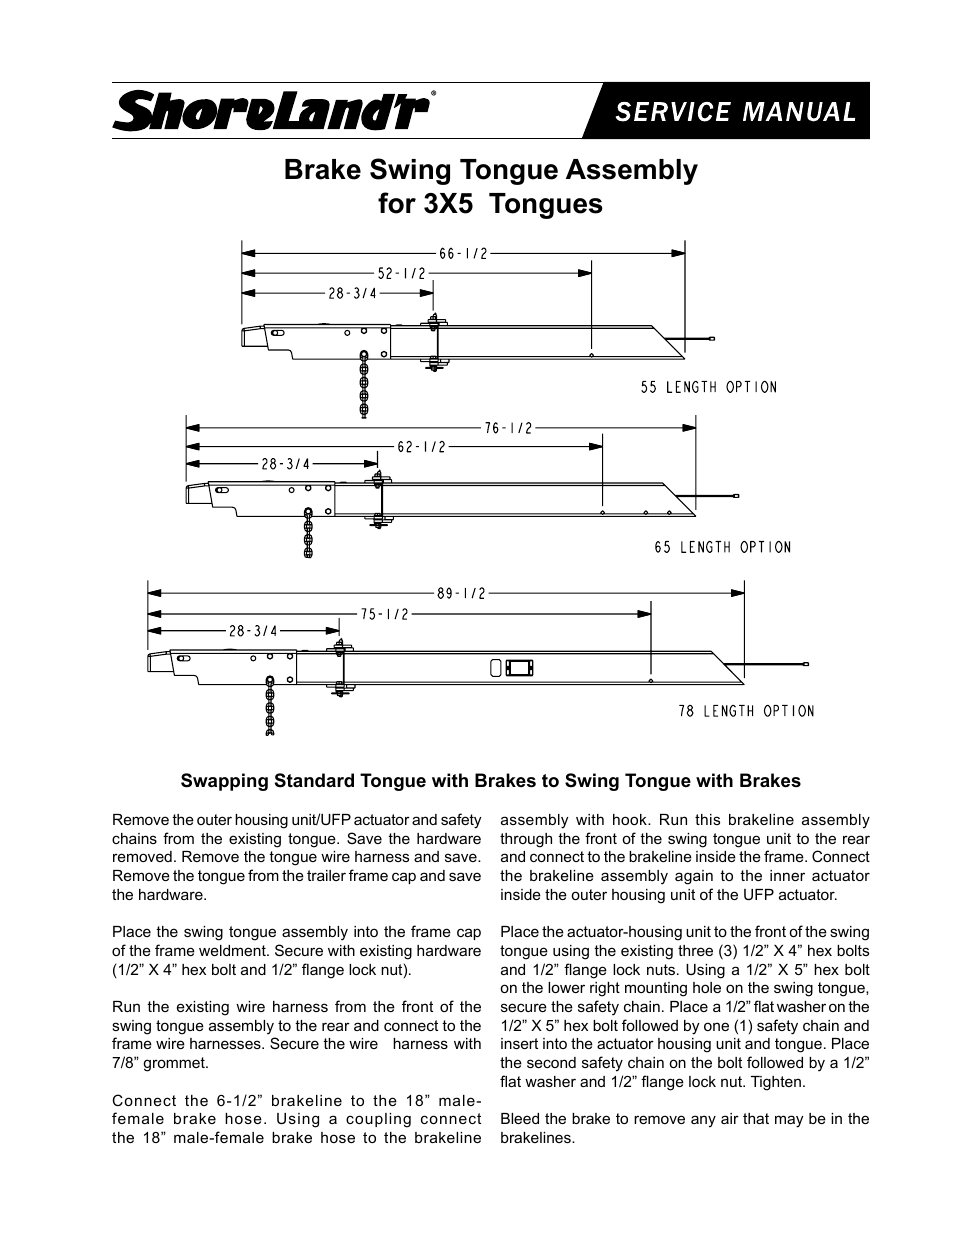 Brake Swing Tongue